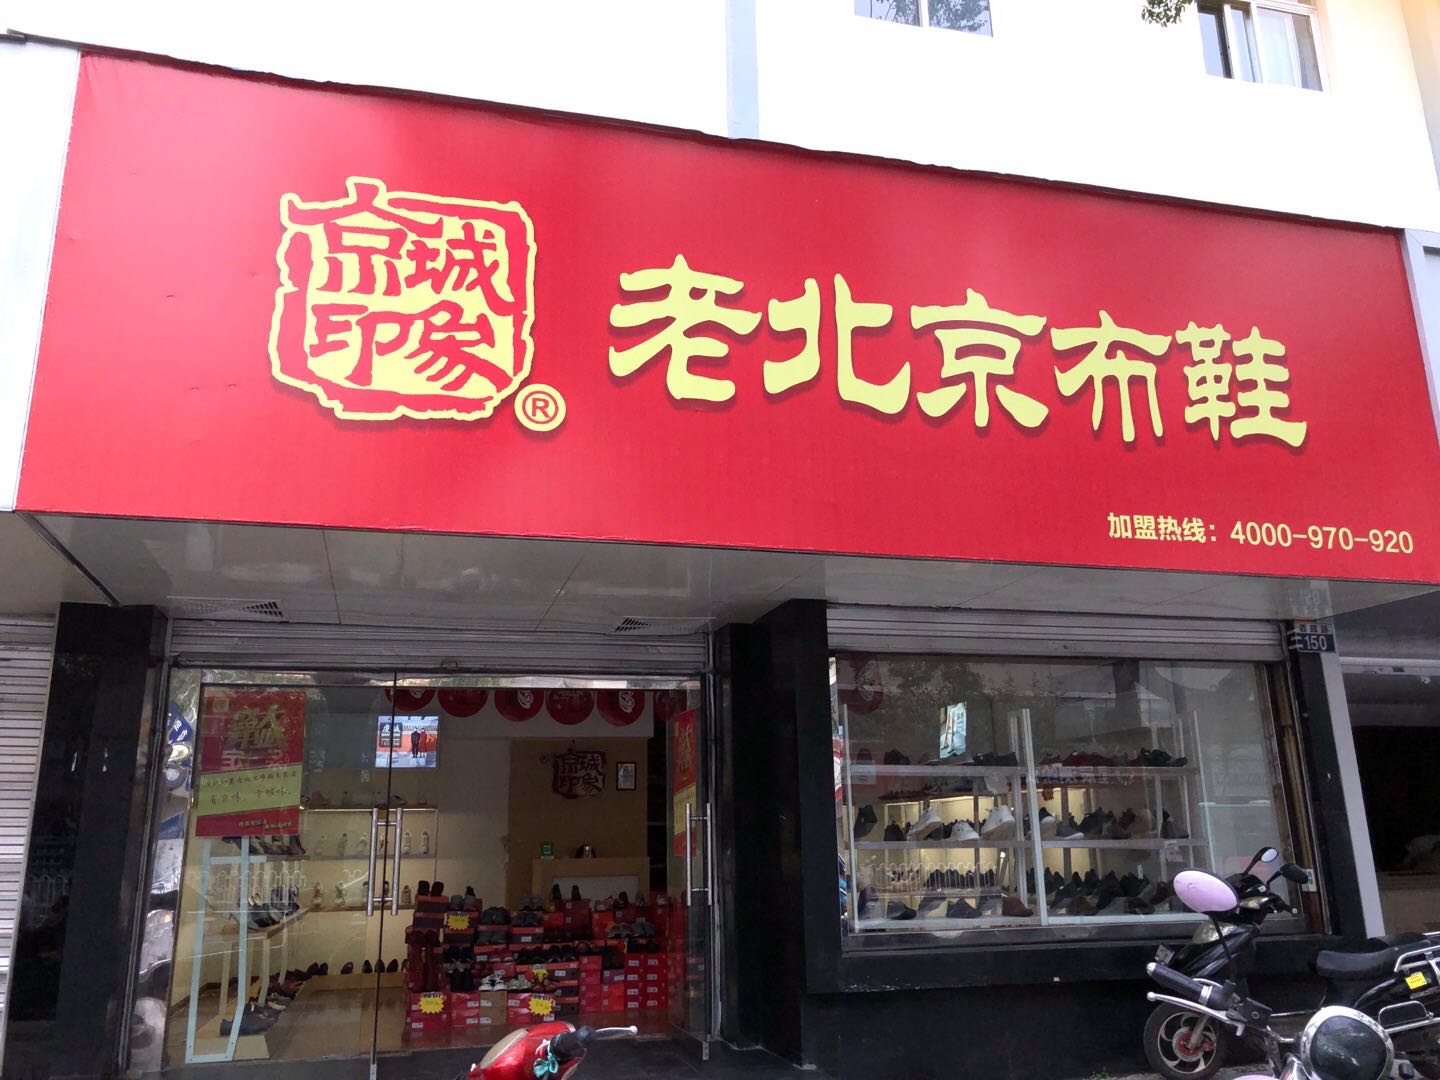 贺：京城印象老北京布鞋加盟店云南昆明苟老板盛大开业！